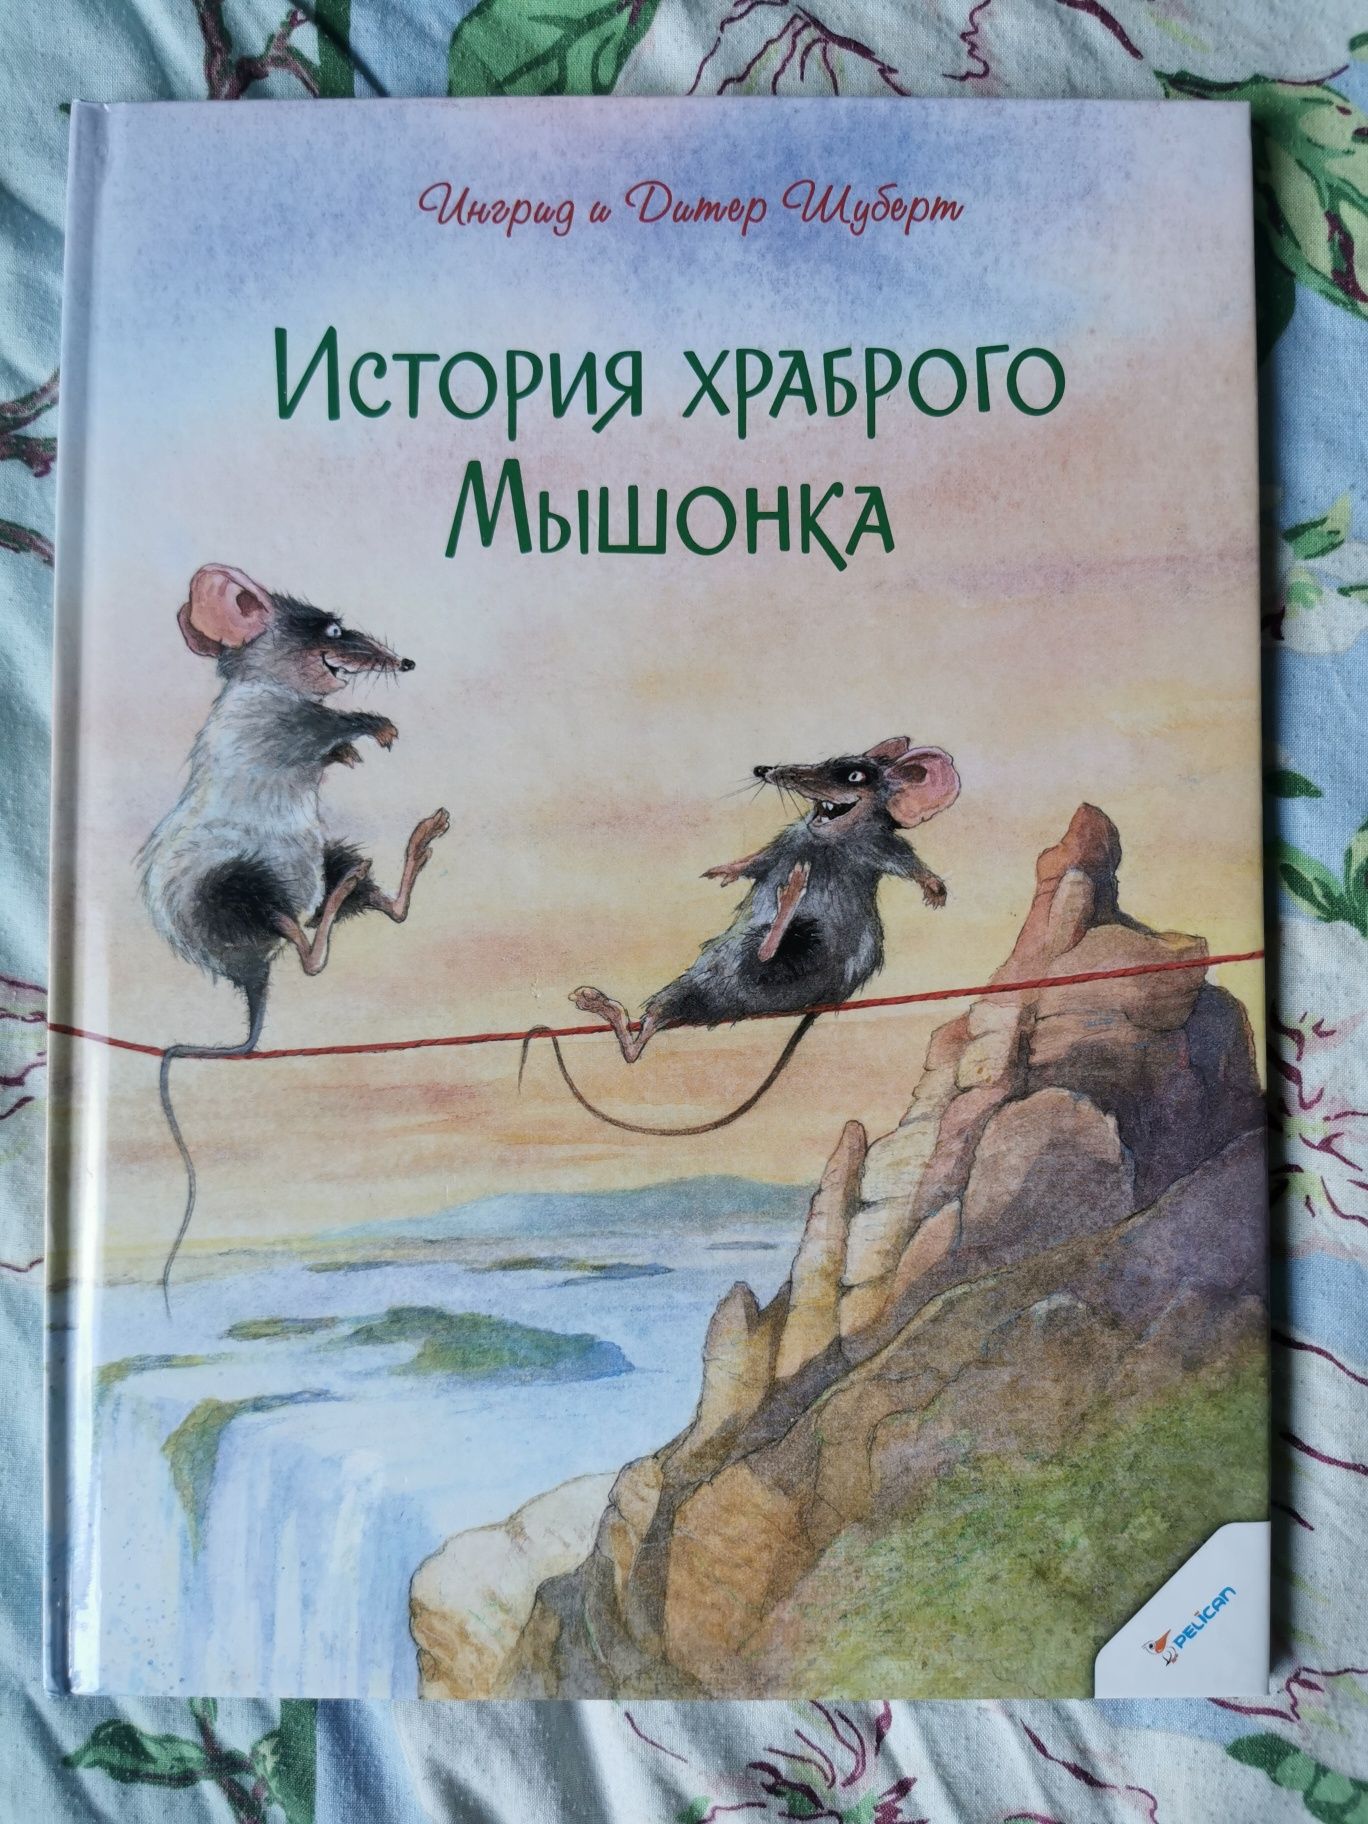 Книга История храброго мышонка, авт. Ингрид и Дитер Шуберт